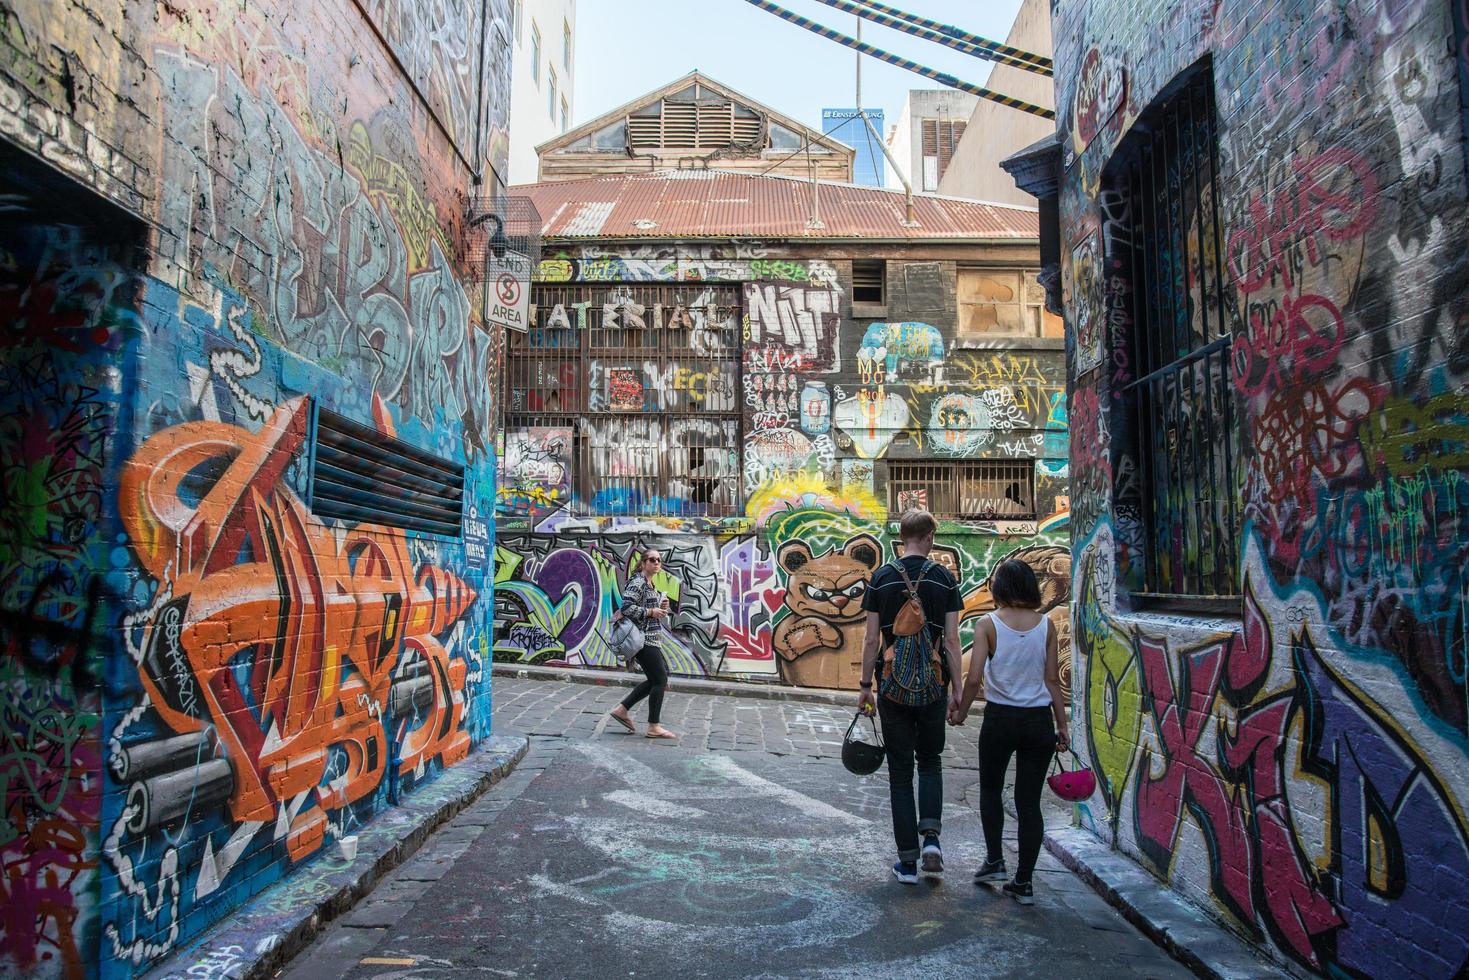 melbourne, austrália - 5 de julho de 2015 - hosier lane the street art of melbourne, victoria, austrália. foto